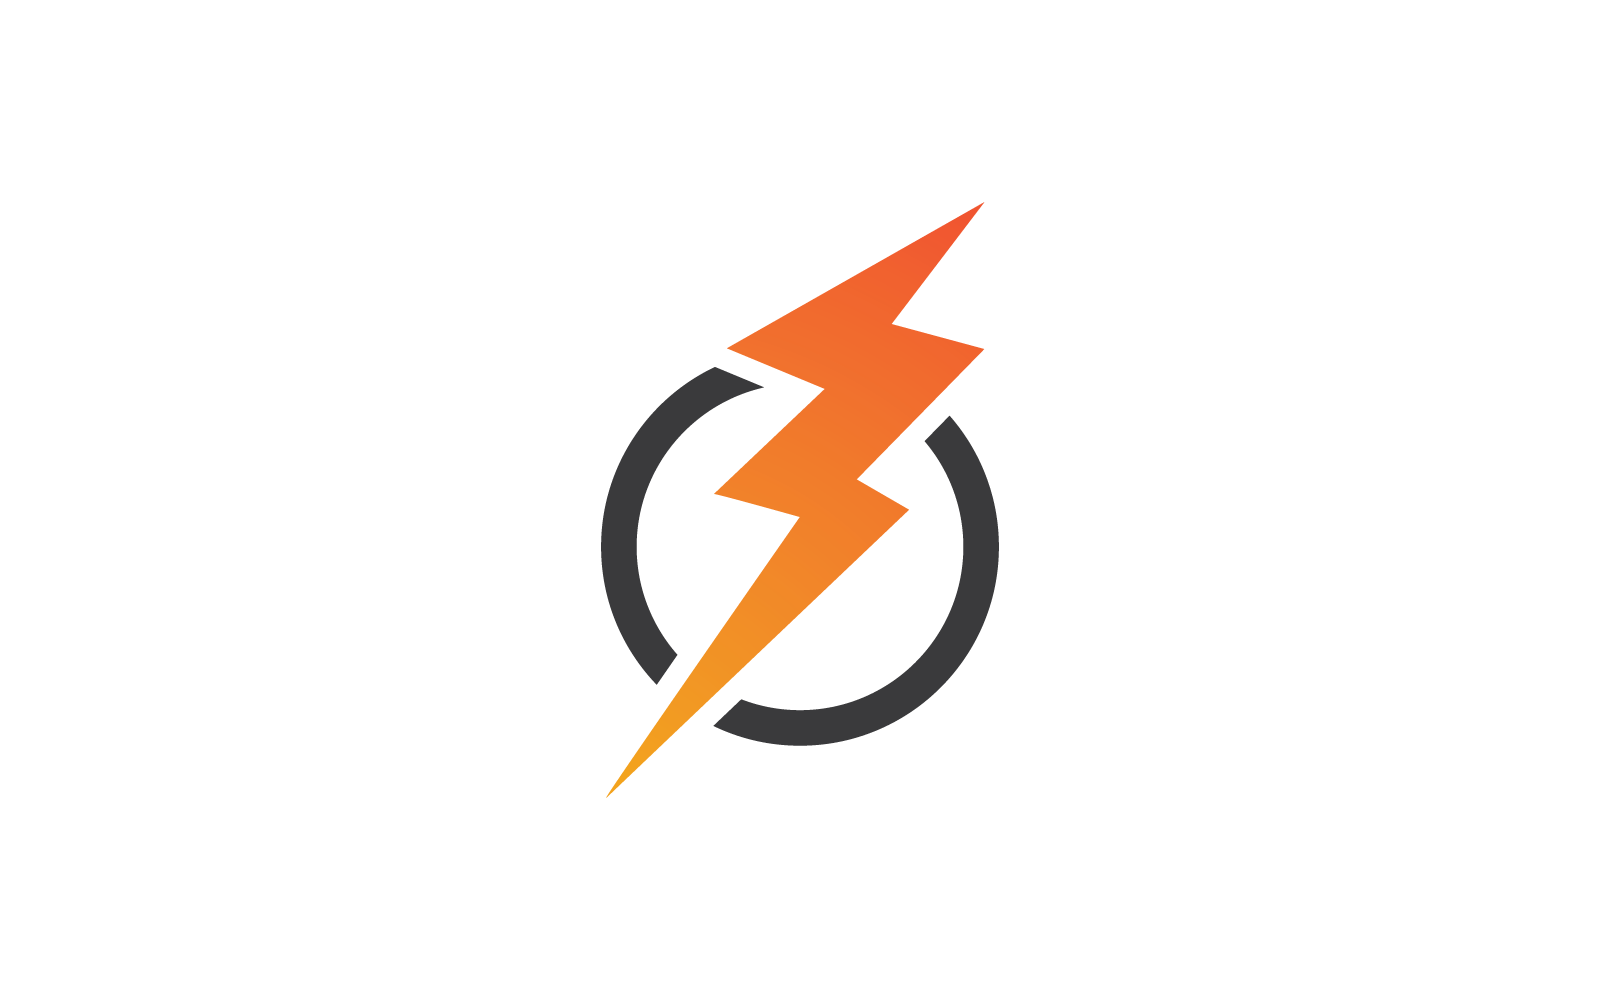 Power lightning power energy logo illustration template